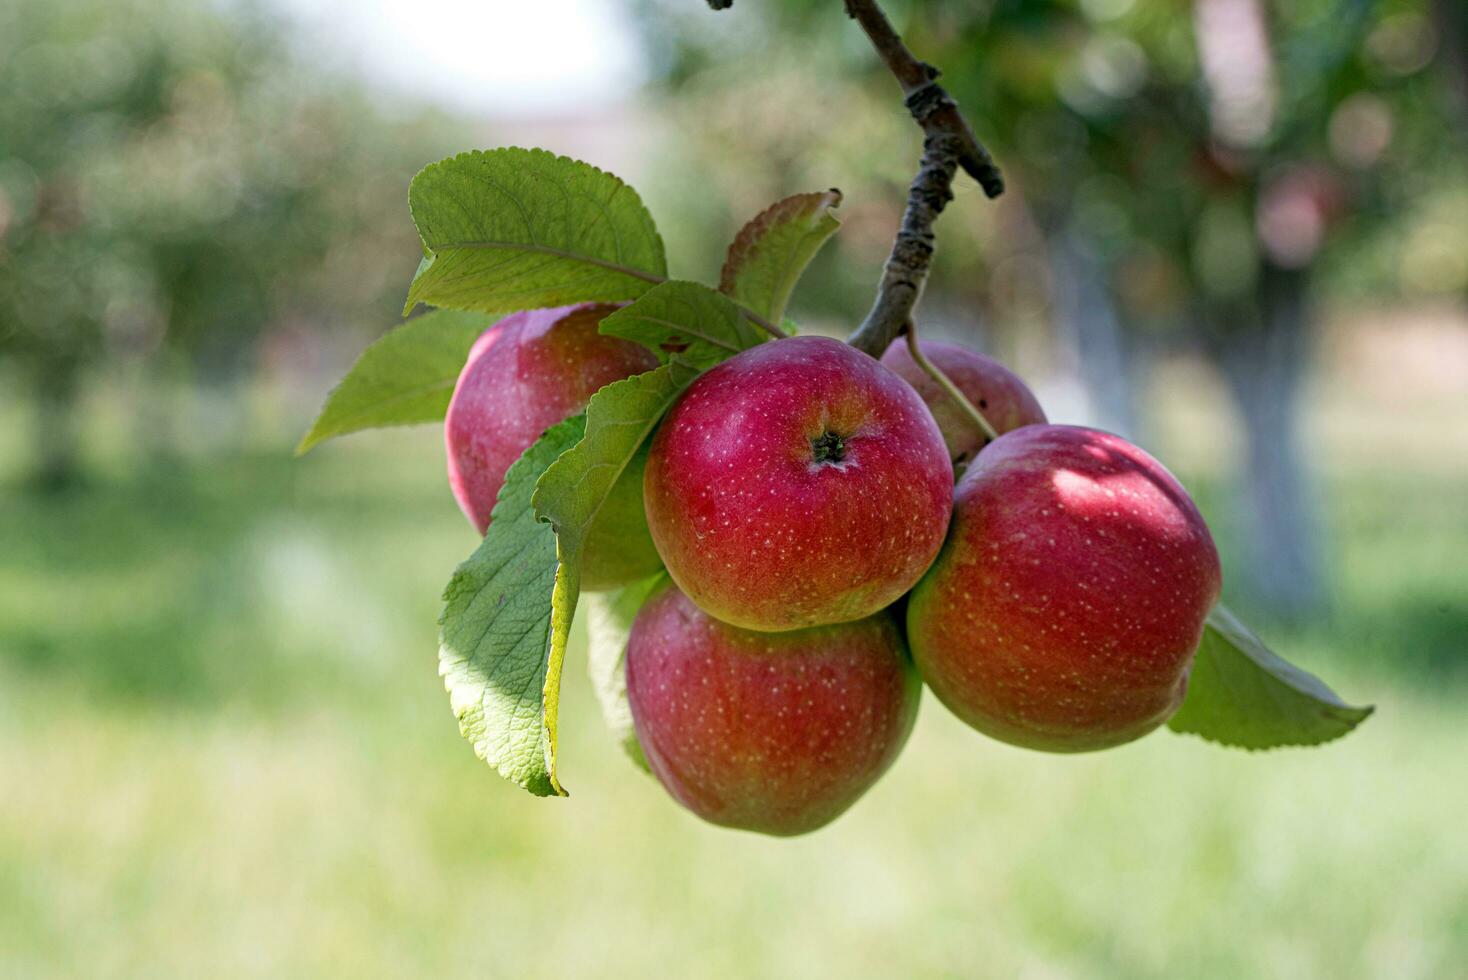 manzana árbol con manzanas en rama foto